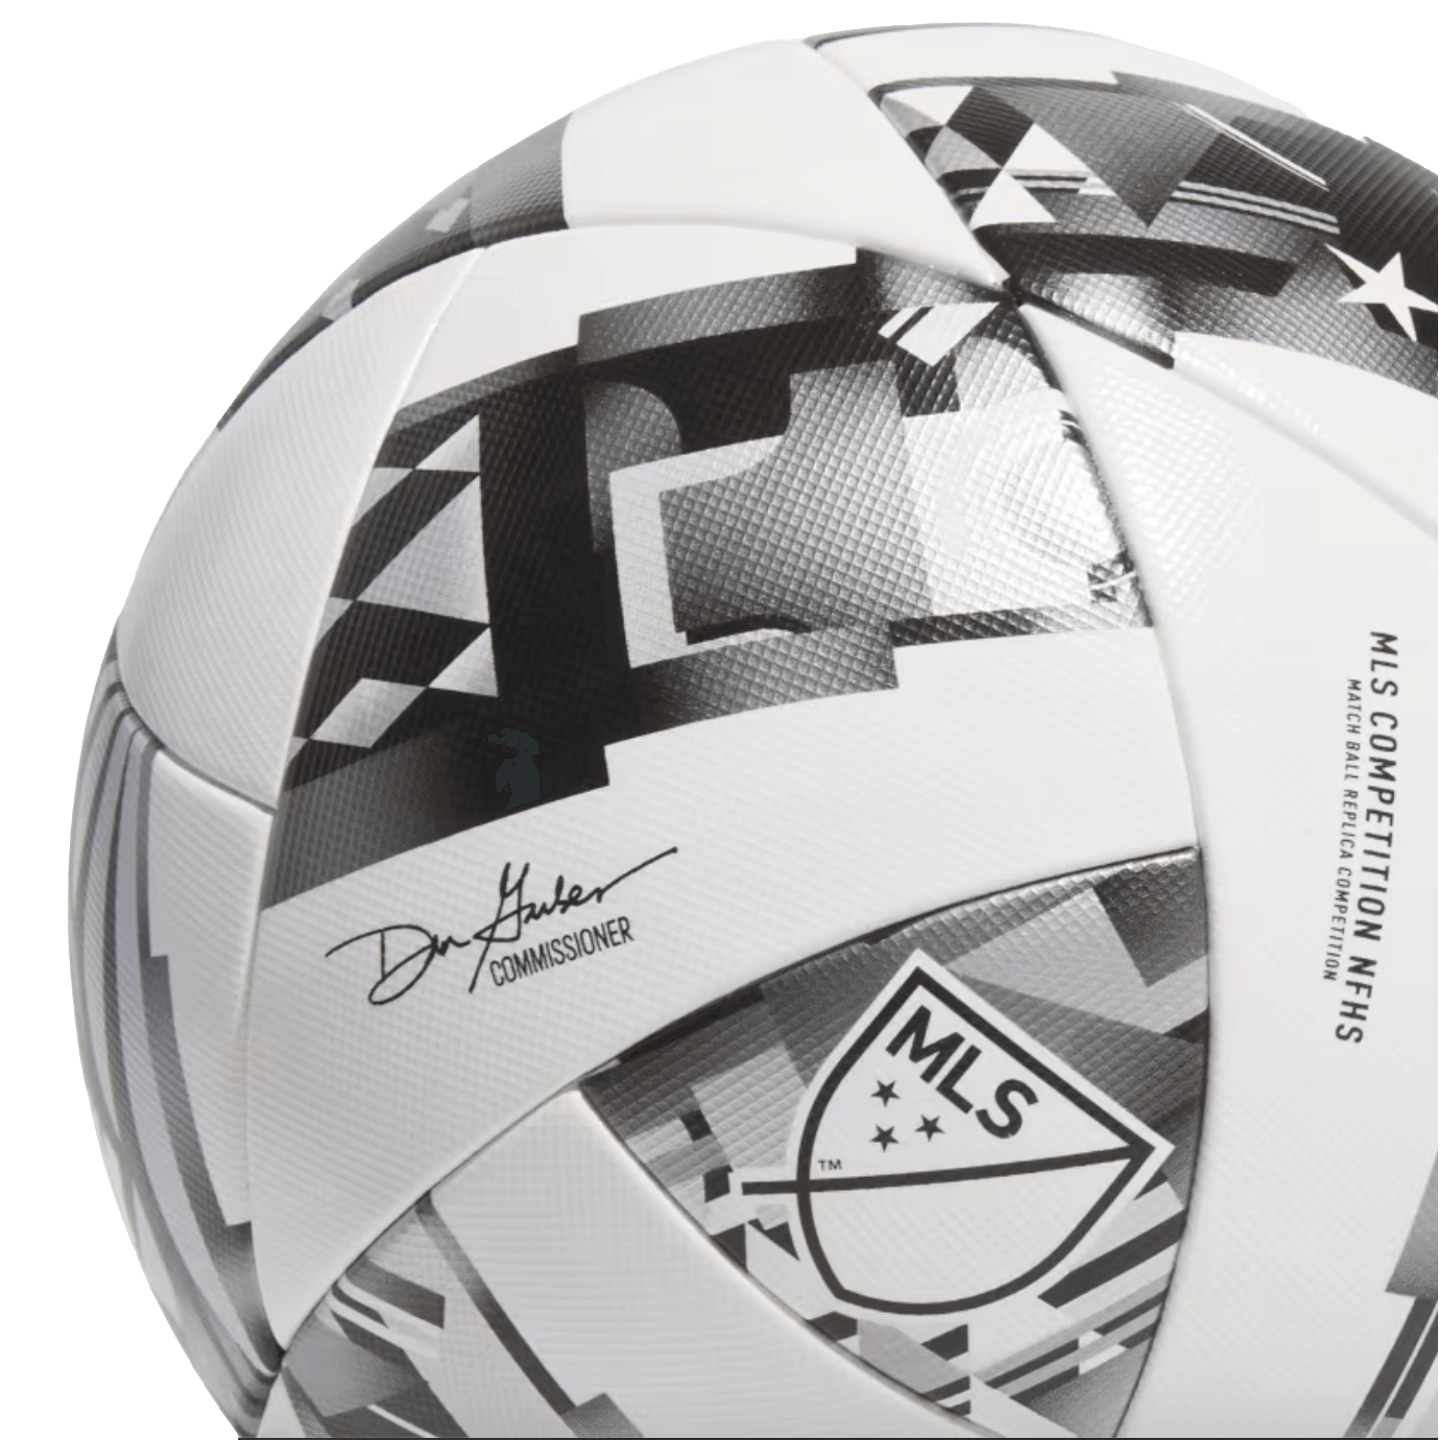 Balón de competición Adidas MLS NFHS